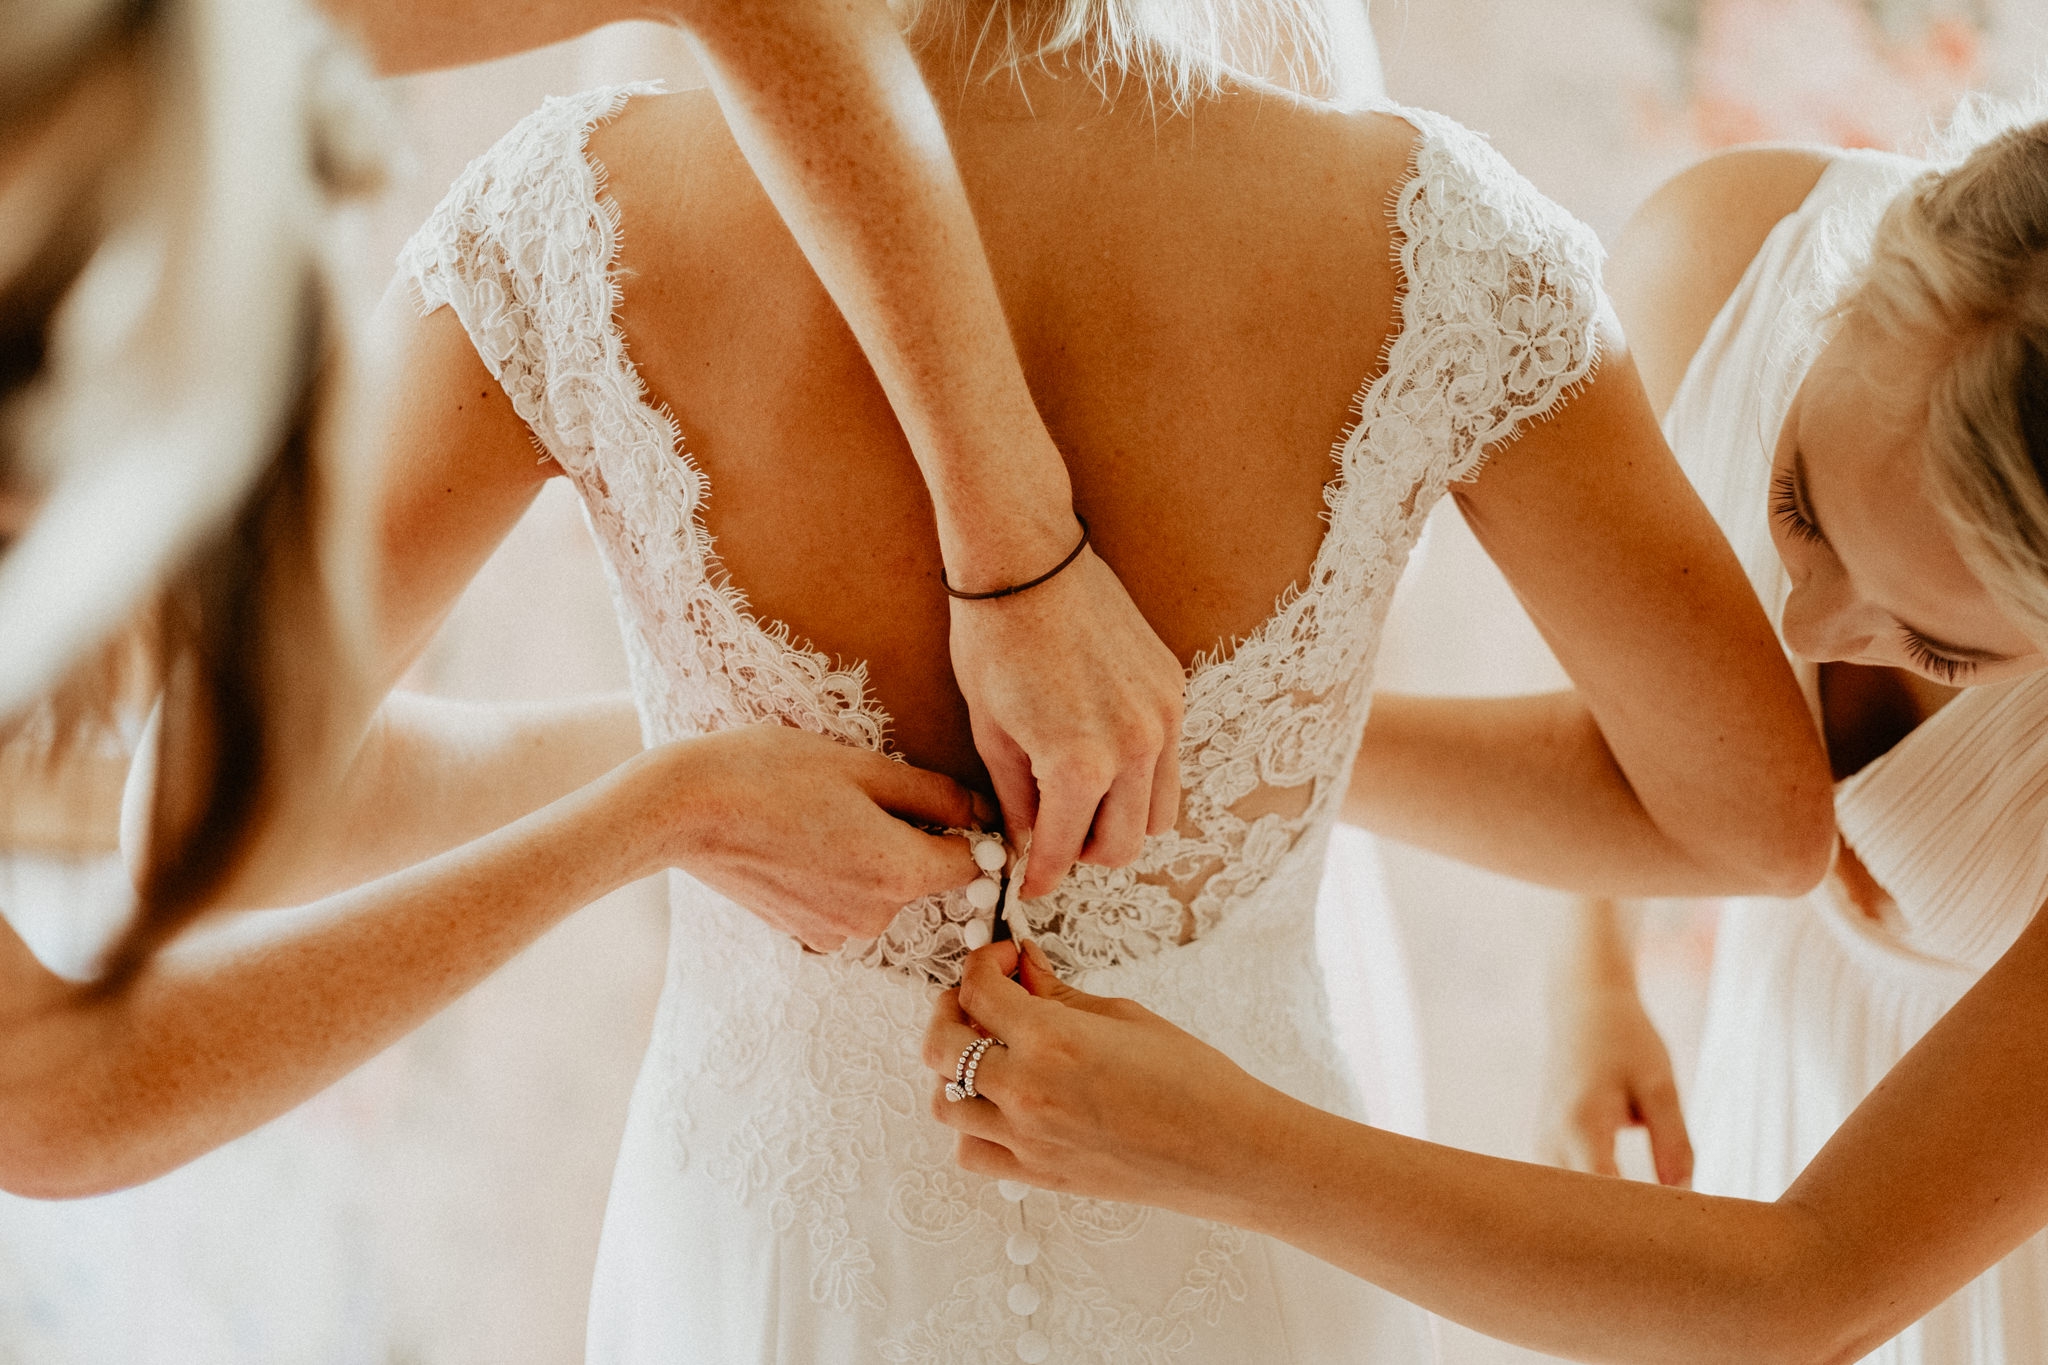 Bride's getting ready - Wedding in Villa Ulignano, Volterra, Tuscany